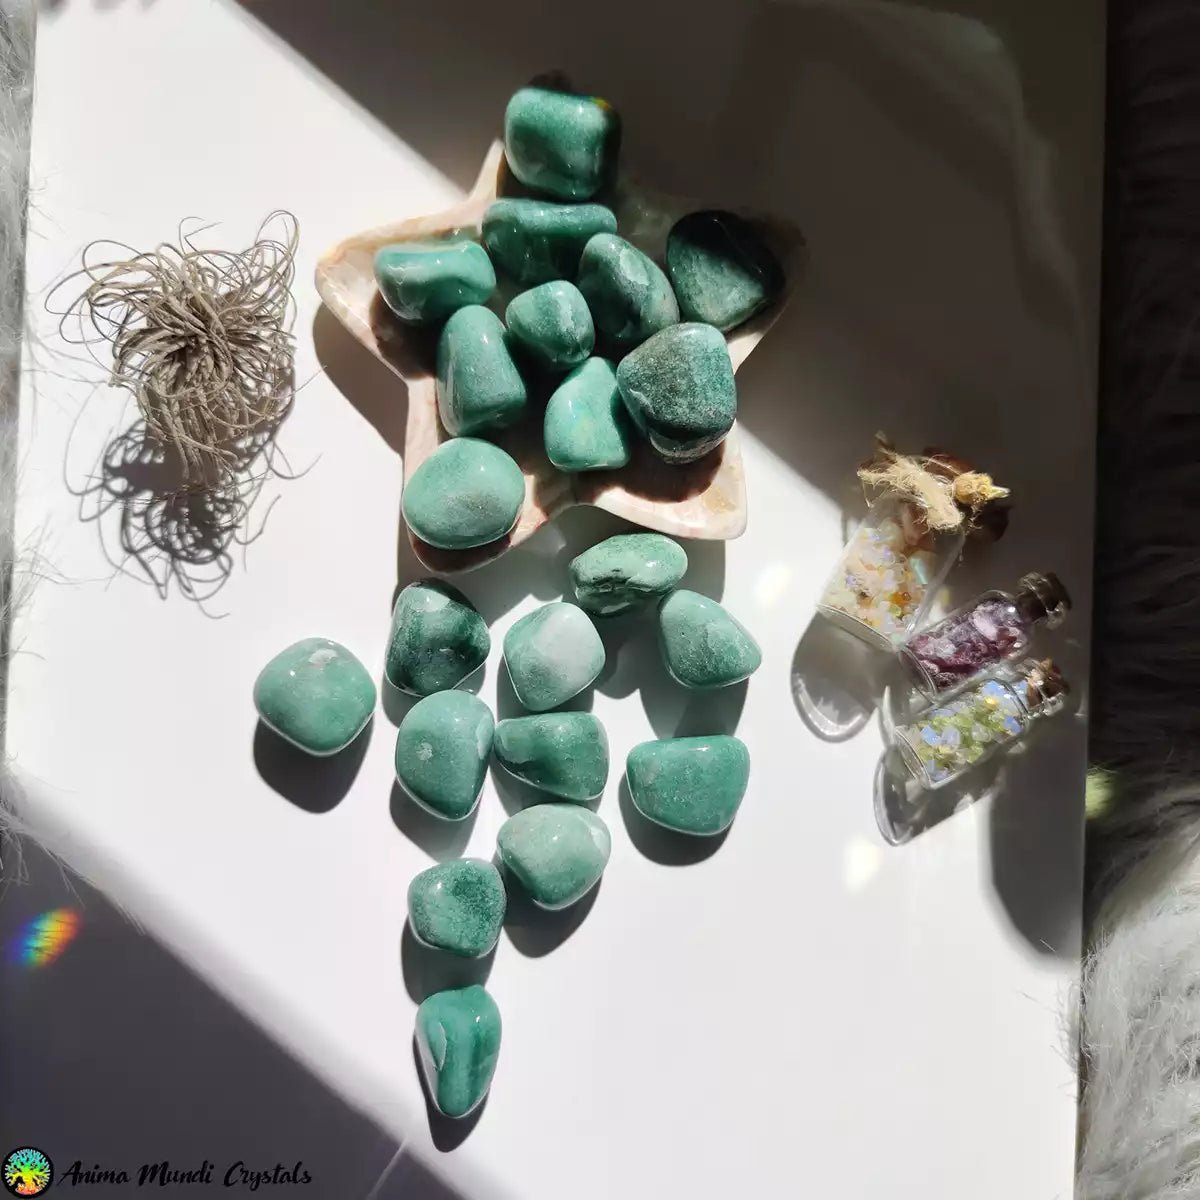 Groene kwartsiet-aventurijn trommelstenen - Anima Mundi-kristallen